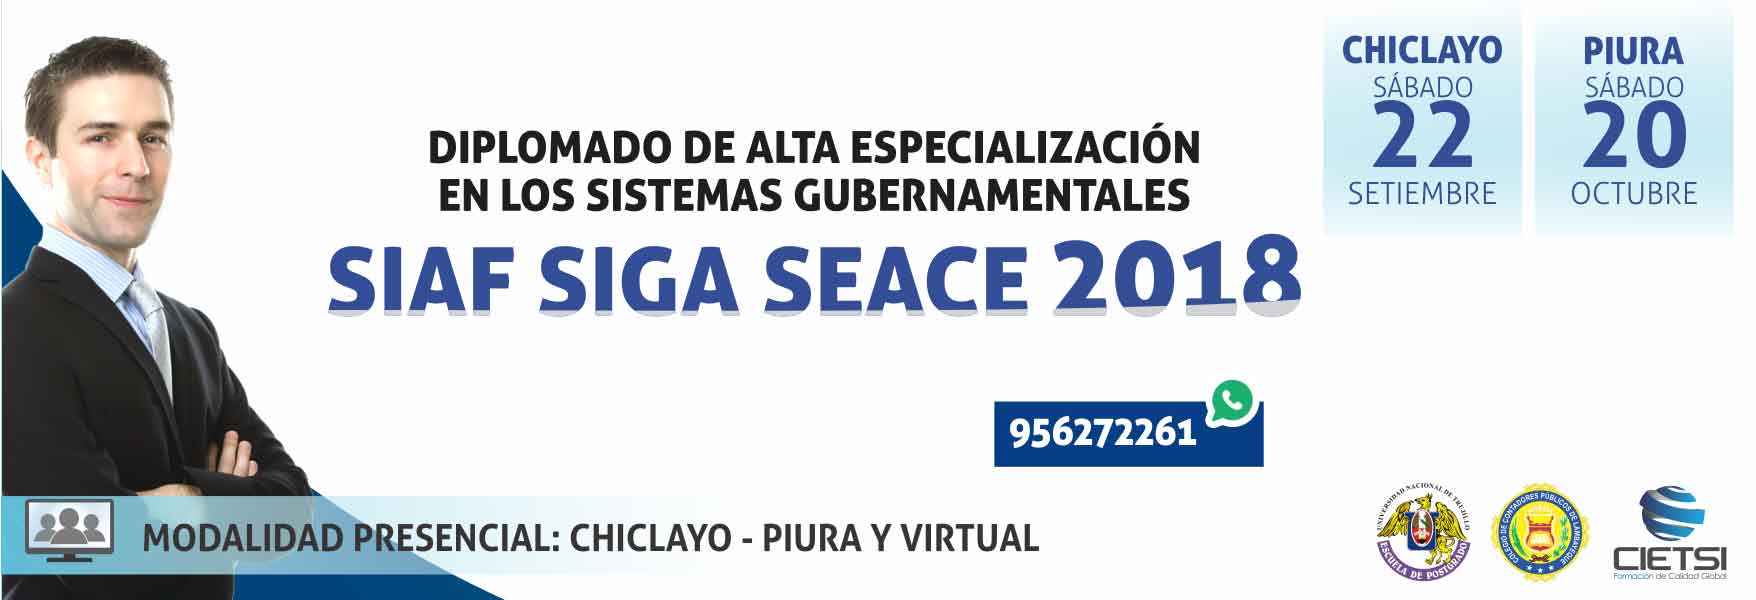 DIPLOMADO DE ALTA ESPECIALIZACIÓN EN LOS SISTEMAS GUBERNAMENTALES DE GESTIÓN PÚBLICA: SIAF SIGA SEACE 2018 - 5TA EDICIÓN